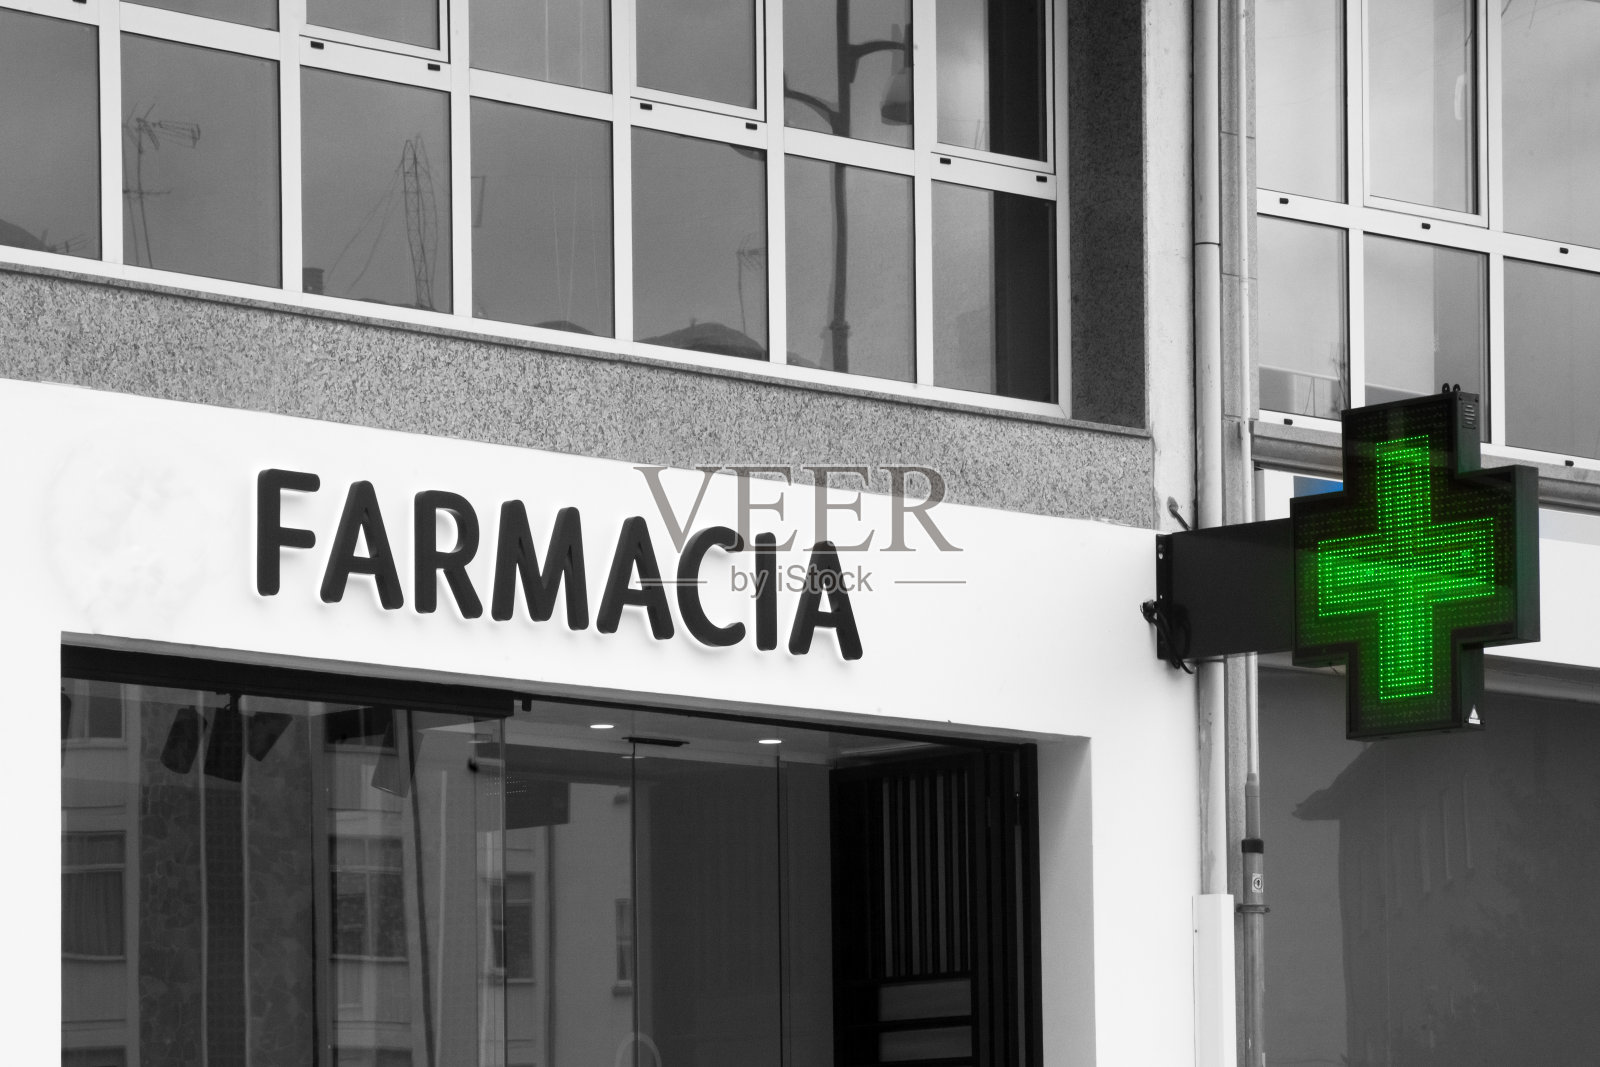 西班牙语的药店标识和绿十字照片摄影图片